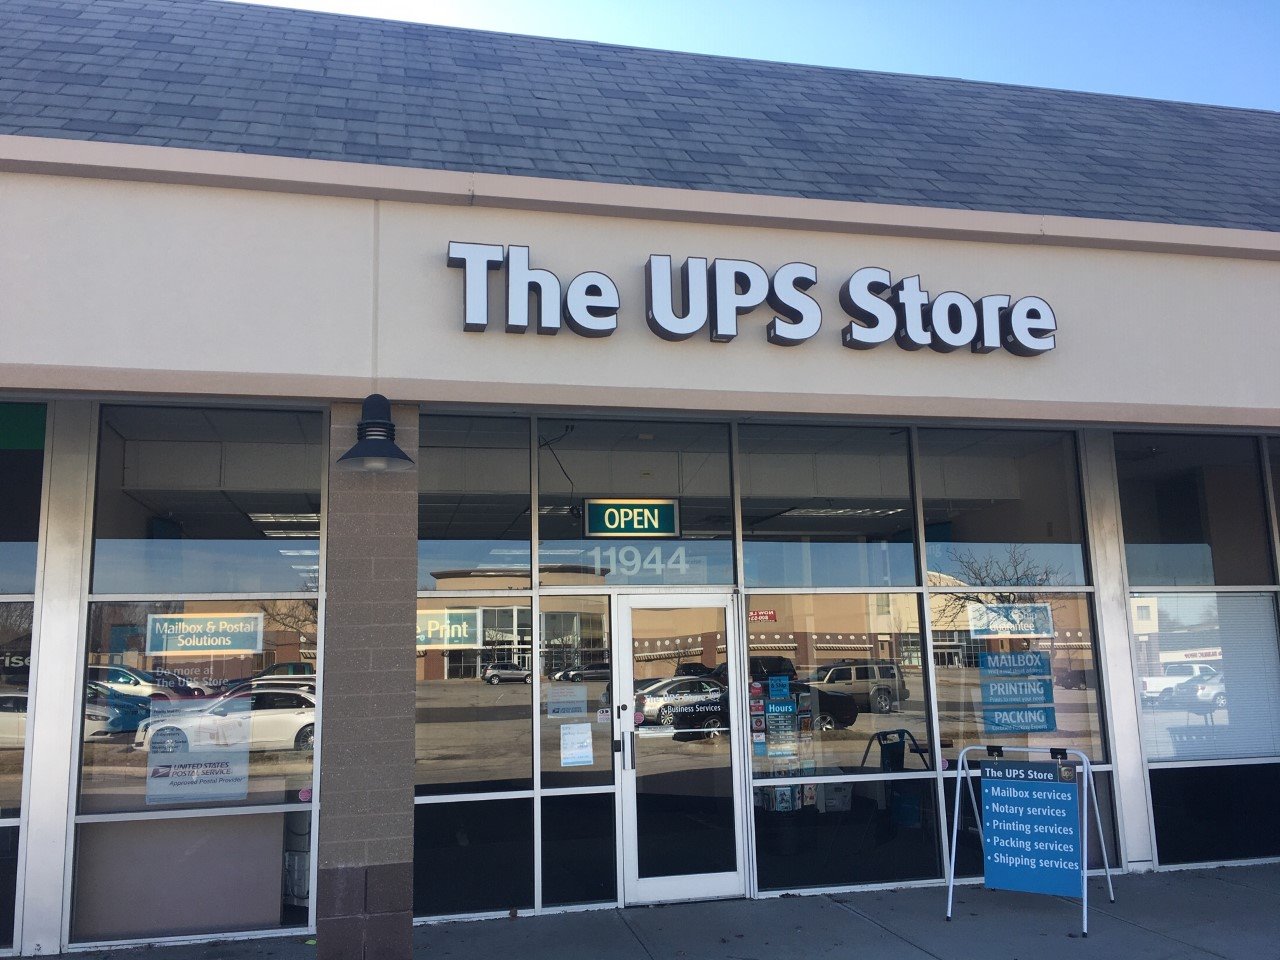 Facade of The UPS Store Lenexa